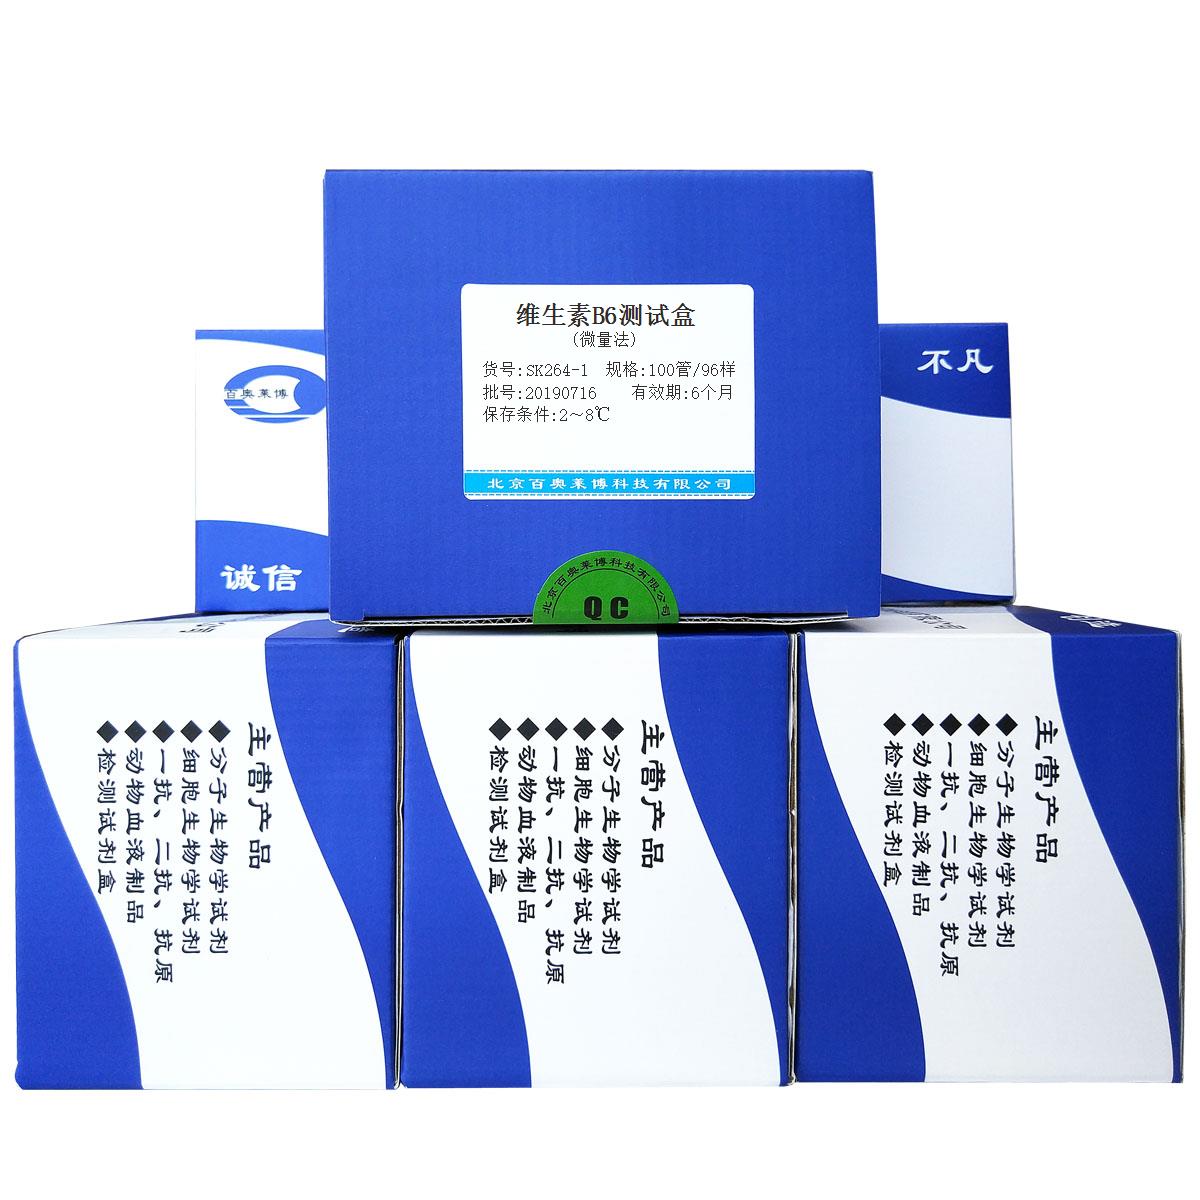 维生素B6测试盒(微量法)北京现货